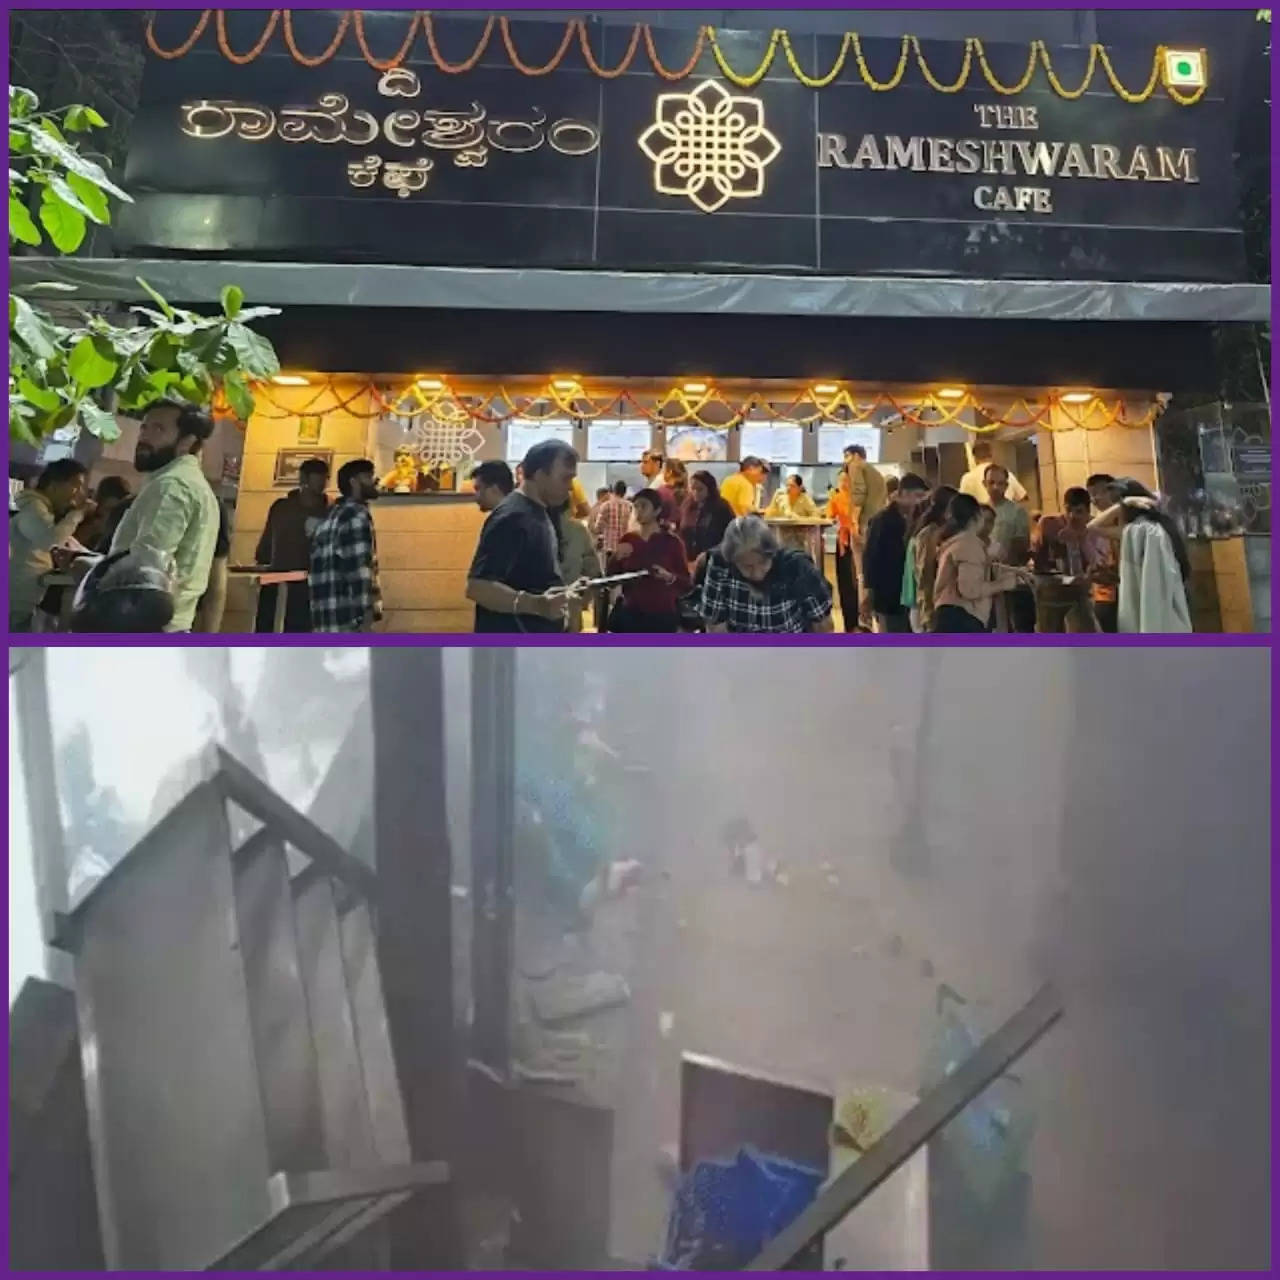  અપડેટ@દેશ: બેંગલુરુમાં રામેશ્વરમ કેફેમાં  વિસ્ફોટ, 9 લોકો ઇજાગ્રસ્ત, જાણો સમગ્ર બનાવ એકજ ક્લિકે 